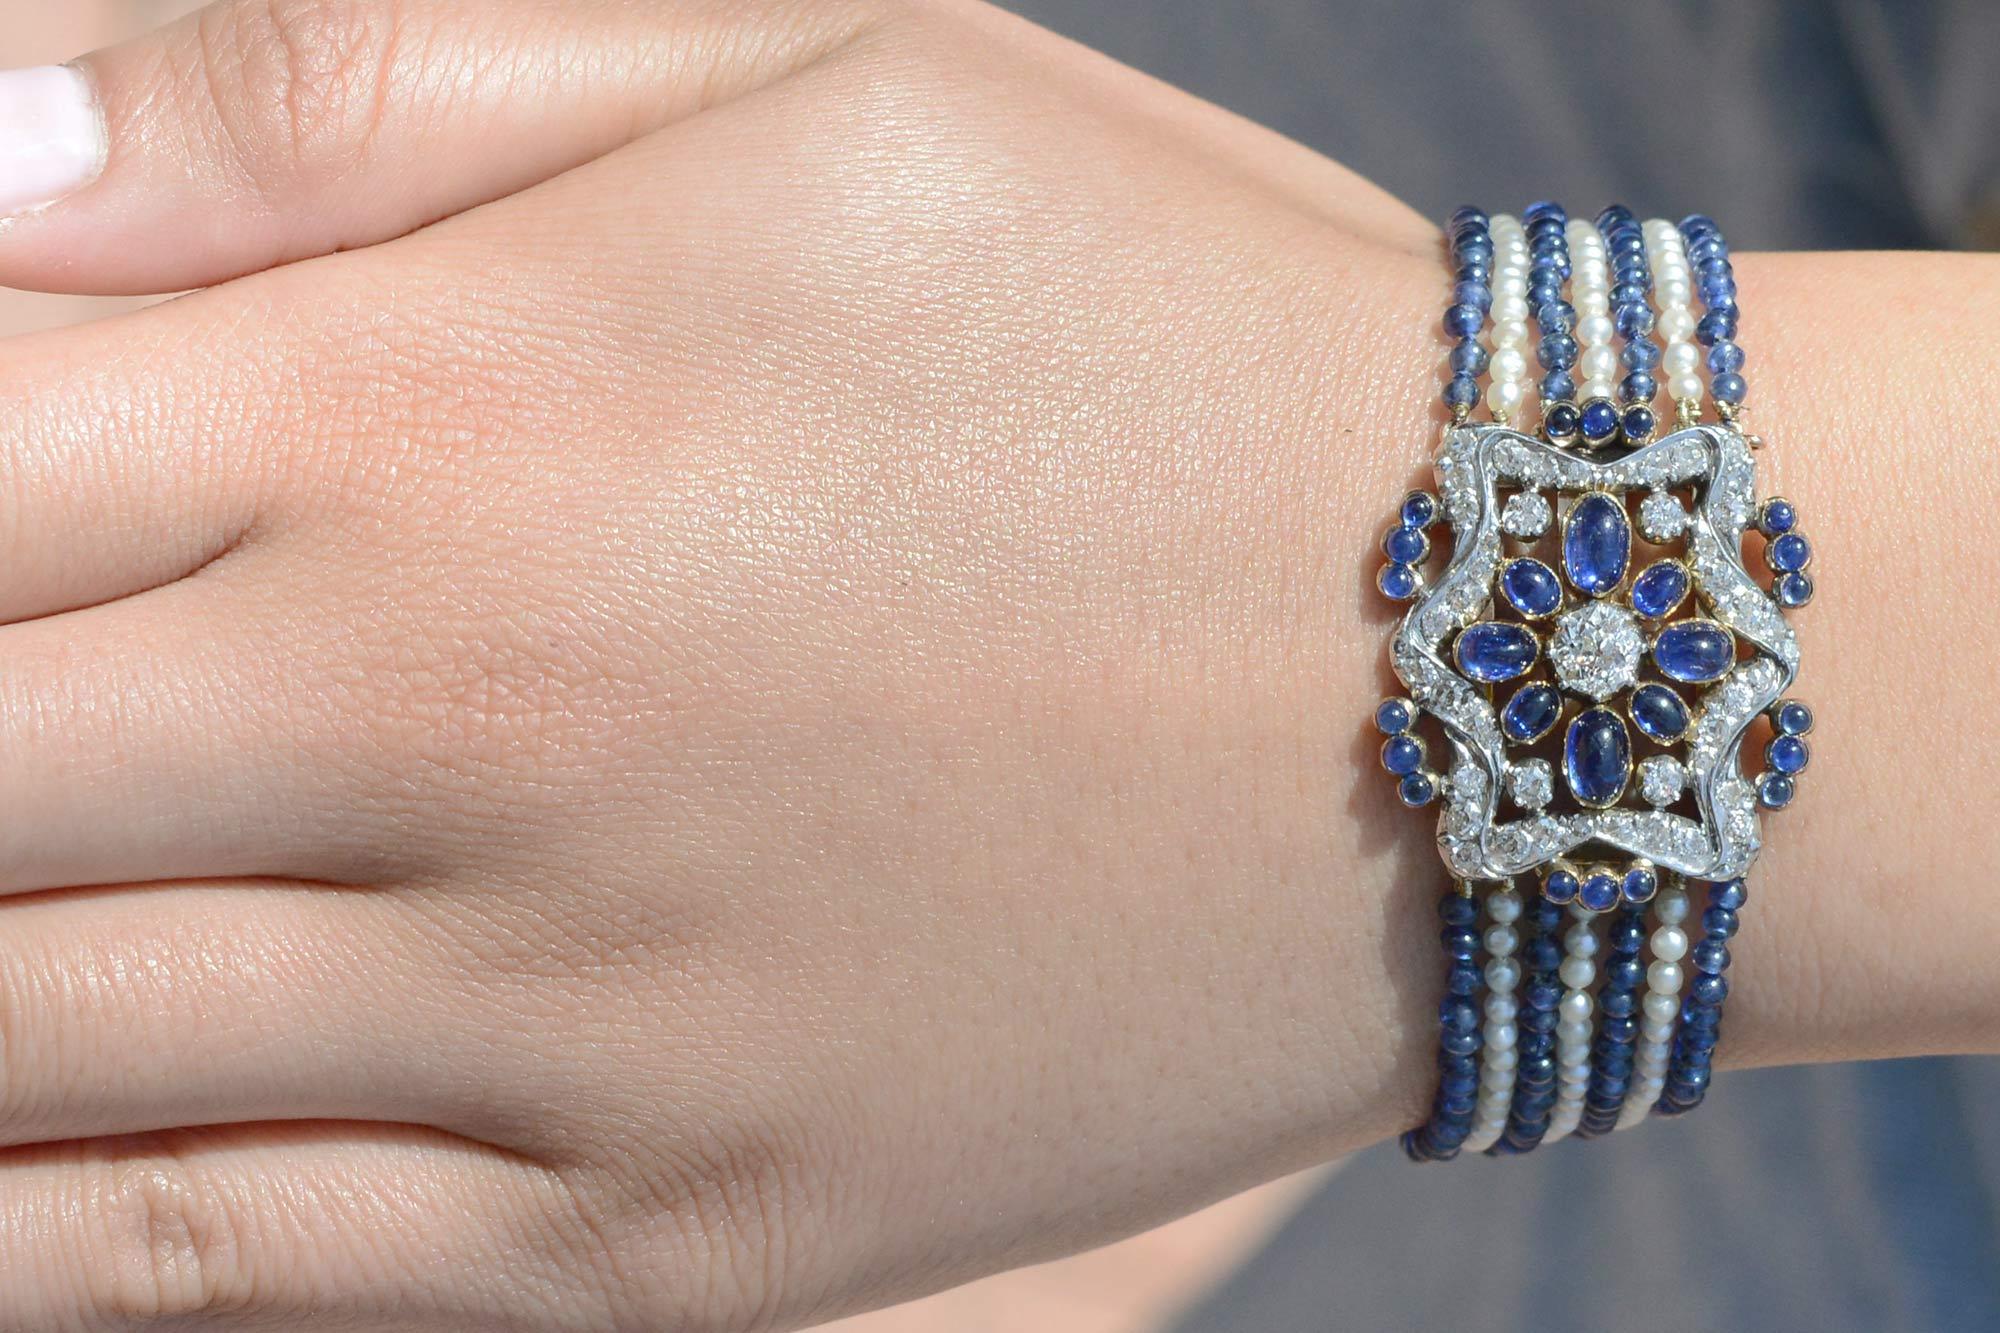 Ce bracelet authentique de la Belle Époque, qui fait partie intégrante de l'histoire, est muni de poinçons français qui attestent d'une provenance de plus de 100 ans. Les sept rangs alternés de perles de rocaille et de saphir mènent à un médaillon